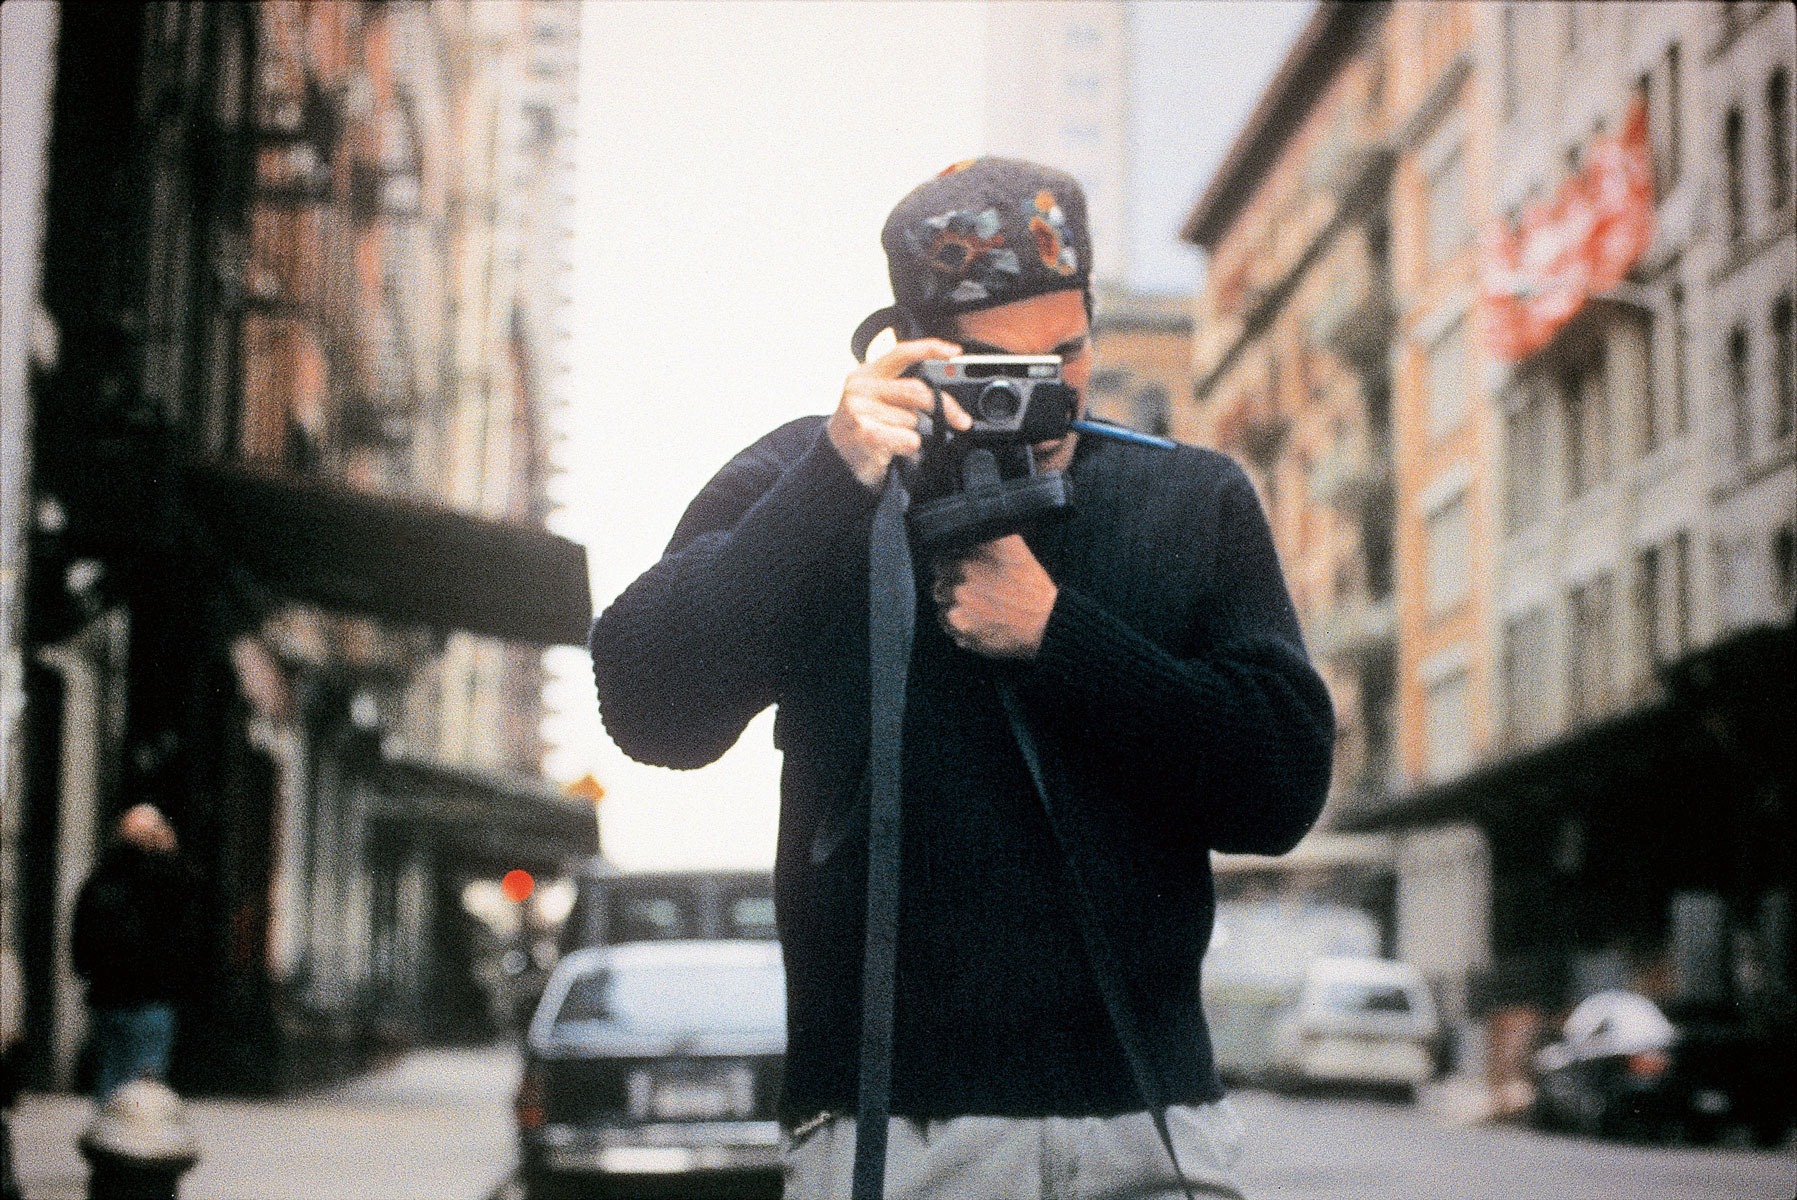 Джон делает фото около своей нью-йоркской квартиры в районе Трайбека, 